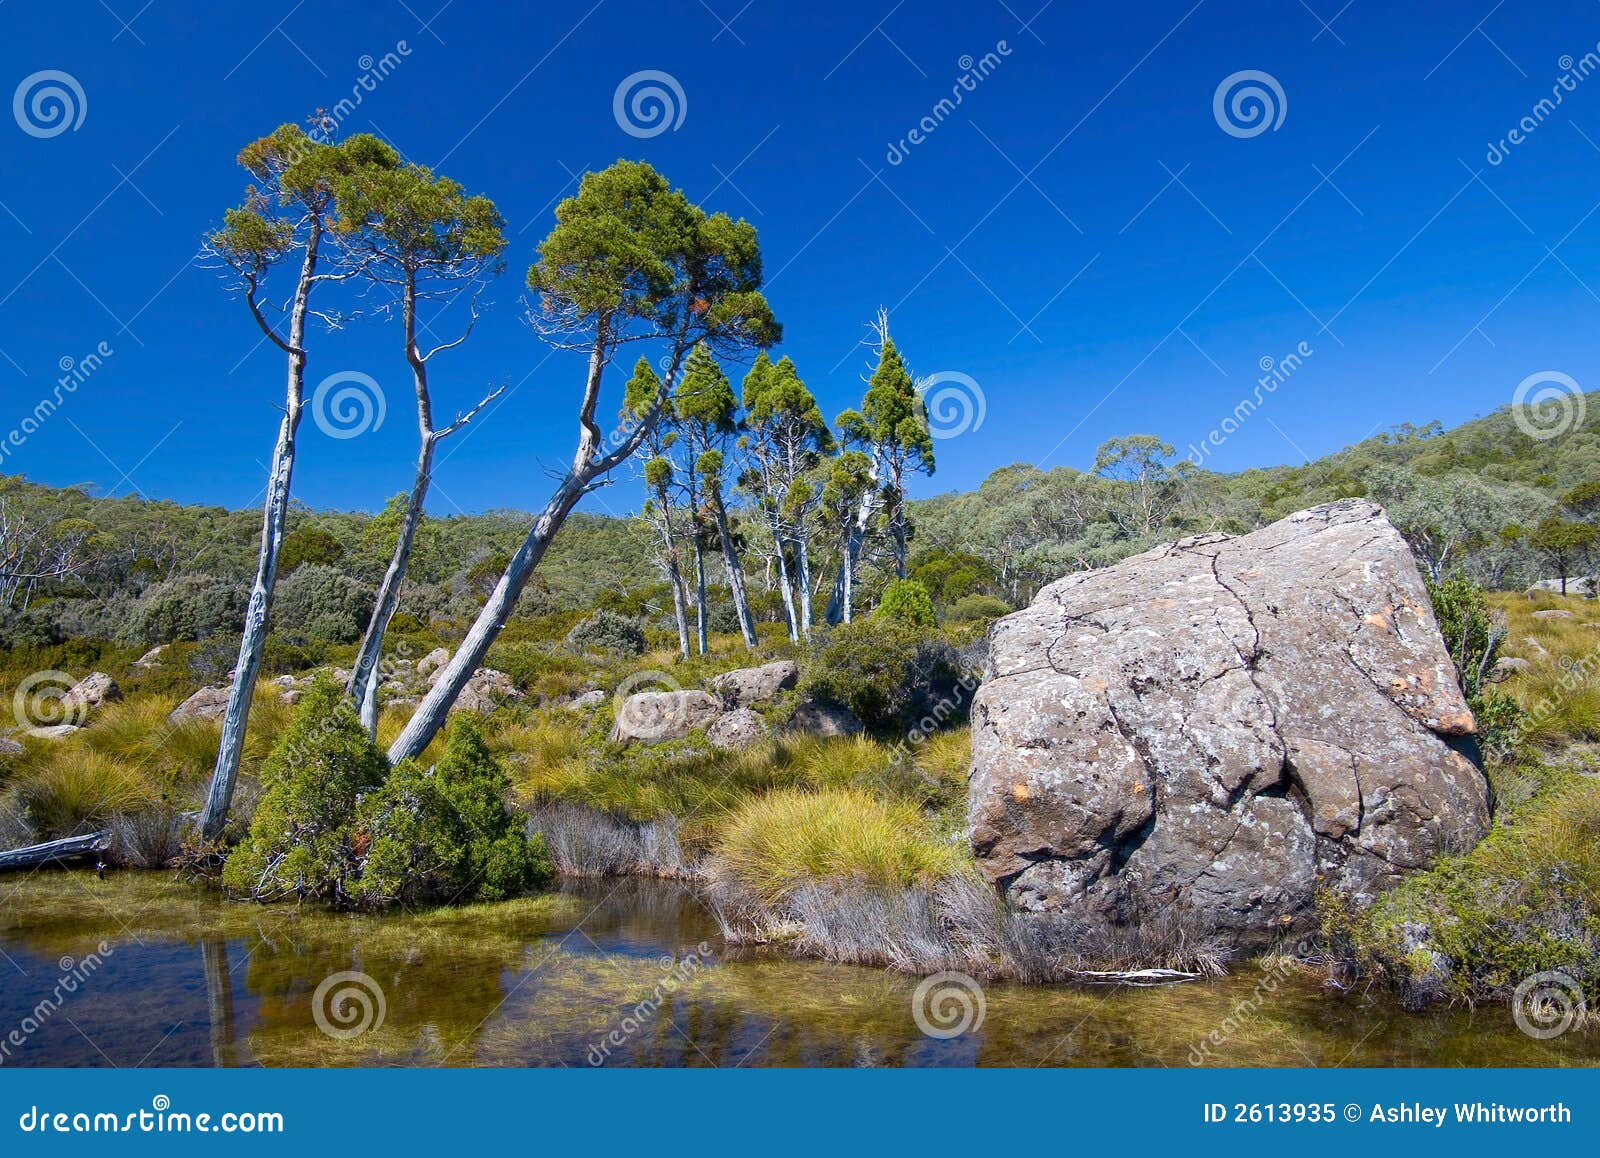 australian alpine plateau